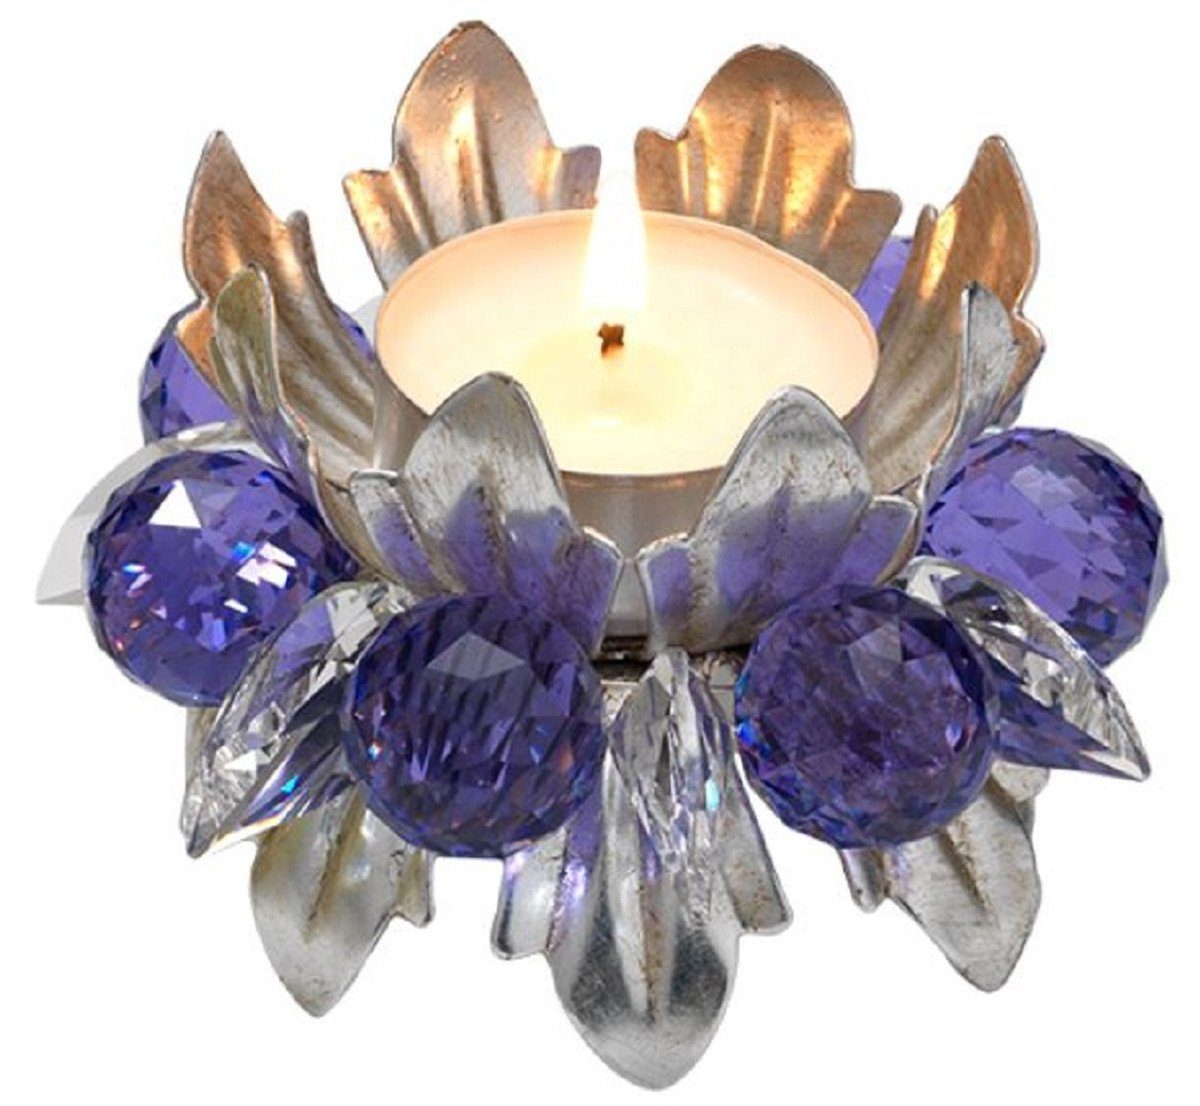 Casa Padrino Teelichthalter Luxus Teelichthalter mit Swarovski Kristallglas Silber / Violett Ø 9 x H. 6 cm - Luxus Wohnzimmer Deko Accessoires